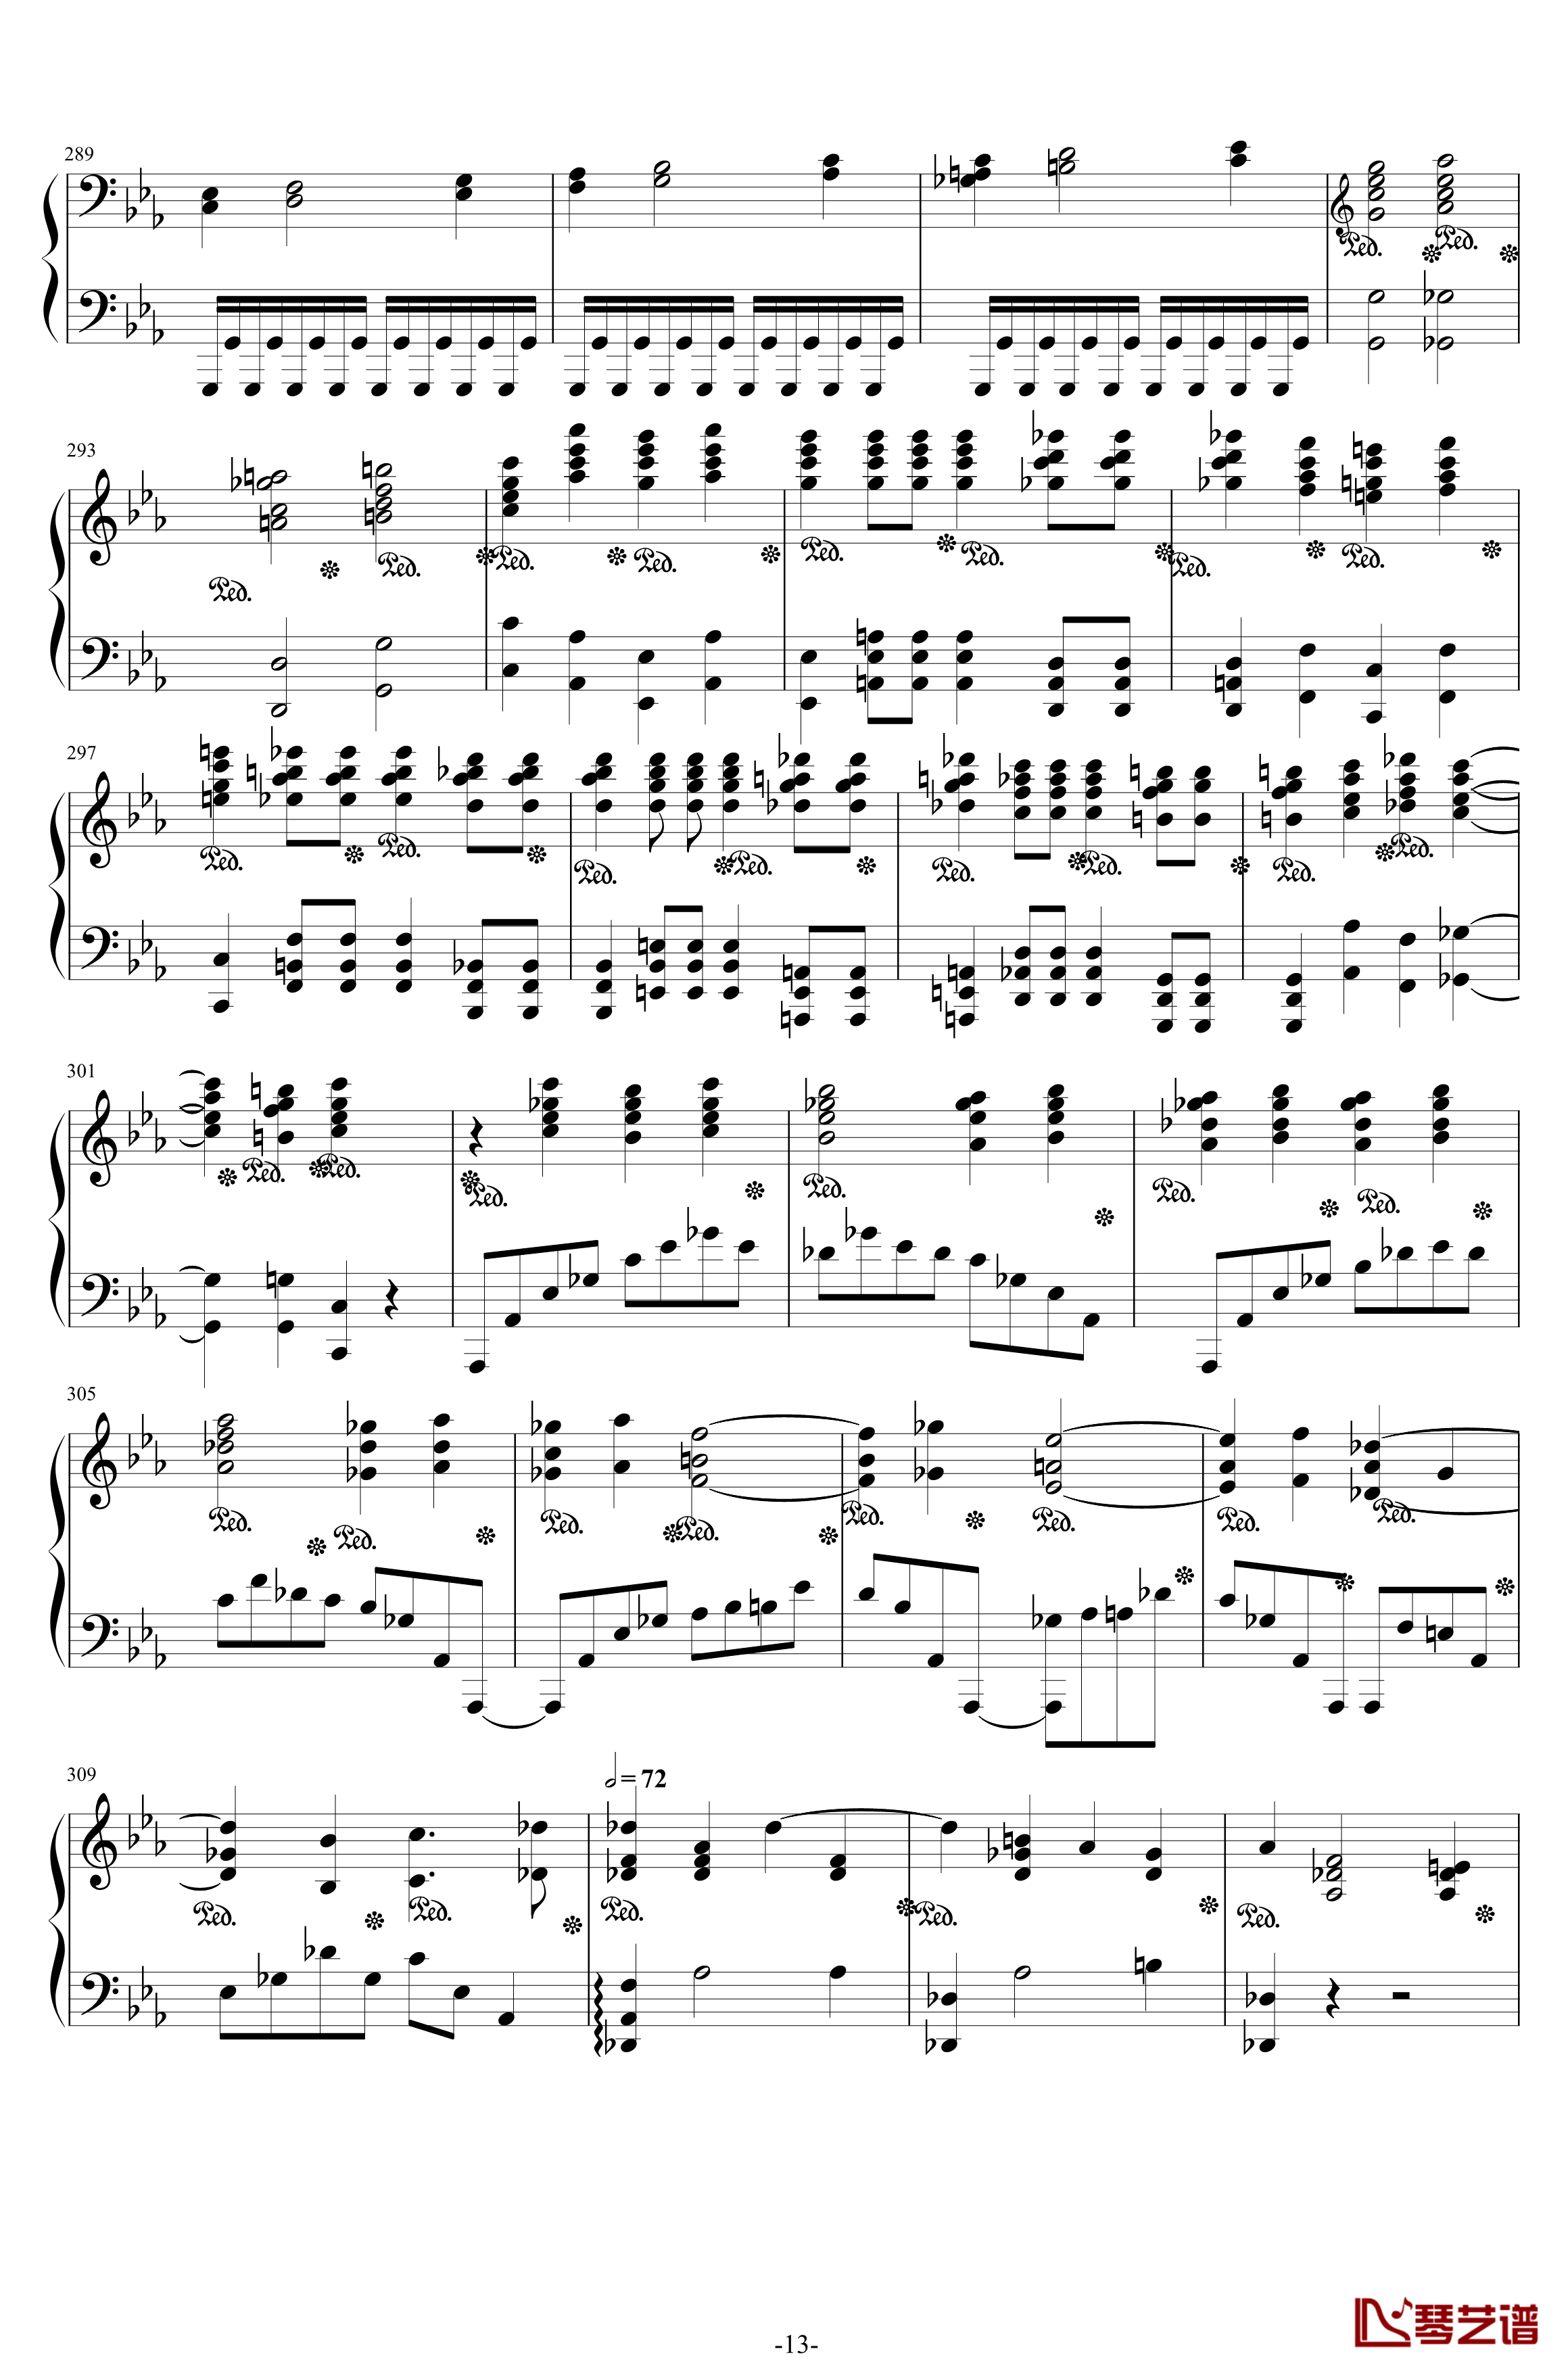 第二钢琴协奏曲钢琴谱--第三乐章独奏版-拉赫马尼若夫-c小调13